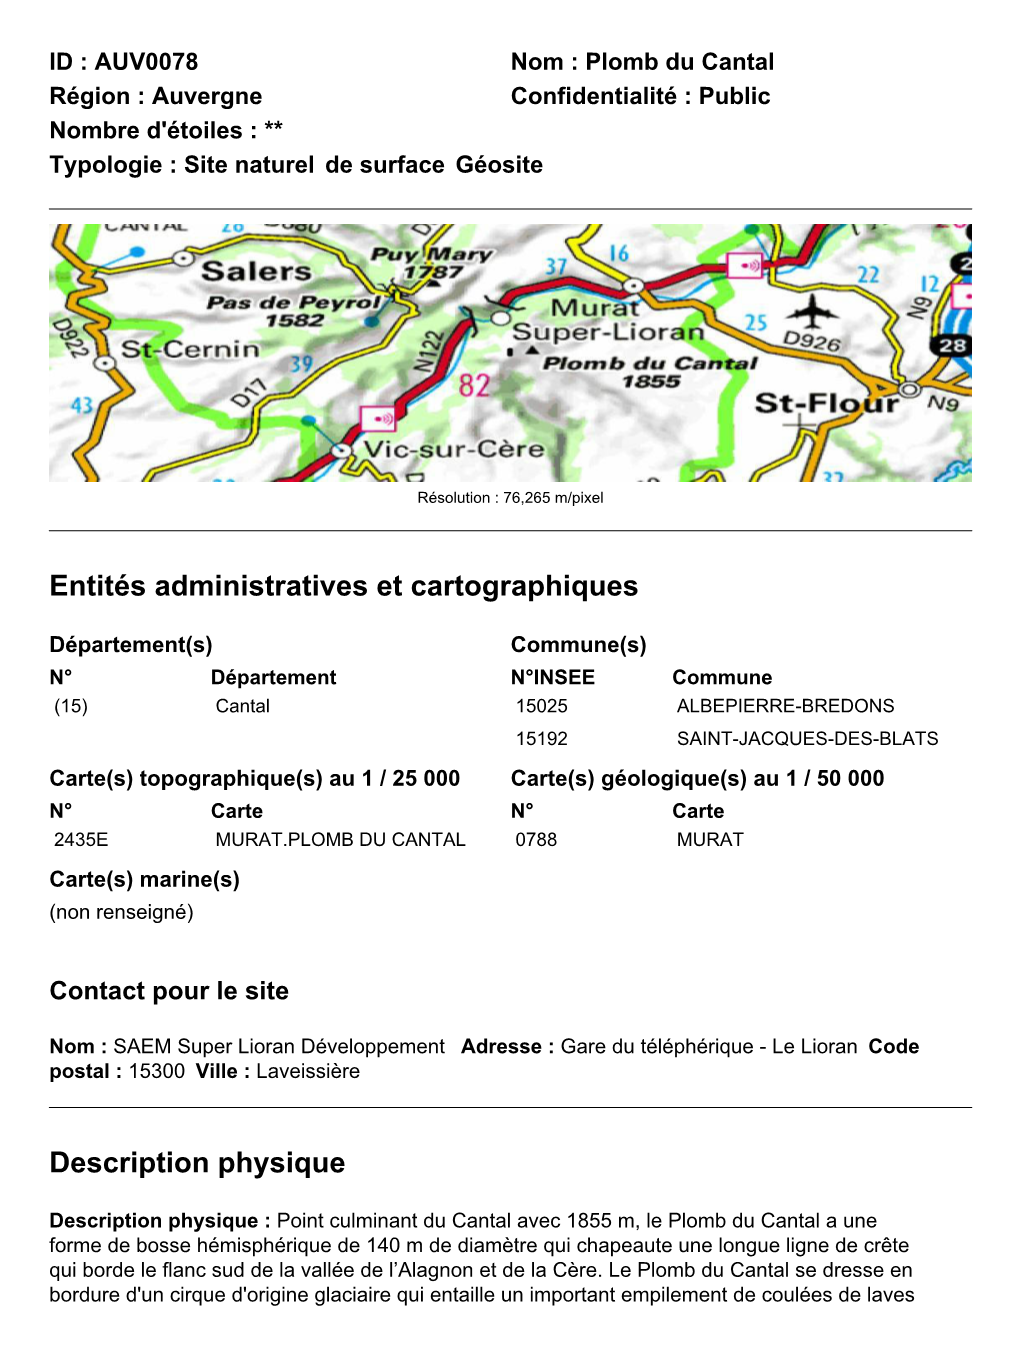 AUV0078 Nom : Plomb Du Cantal Région : Auvergne Confidentialité : Public Nombre D'étoiles : ** Typologie : Site Naturel De Surface Géosite